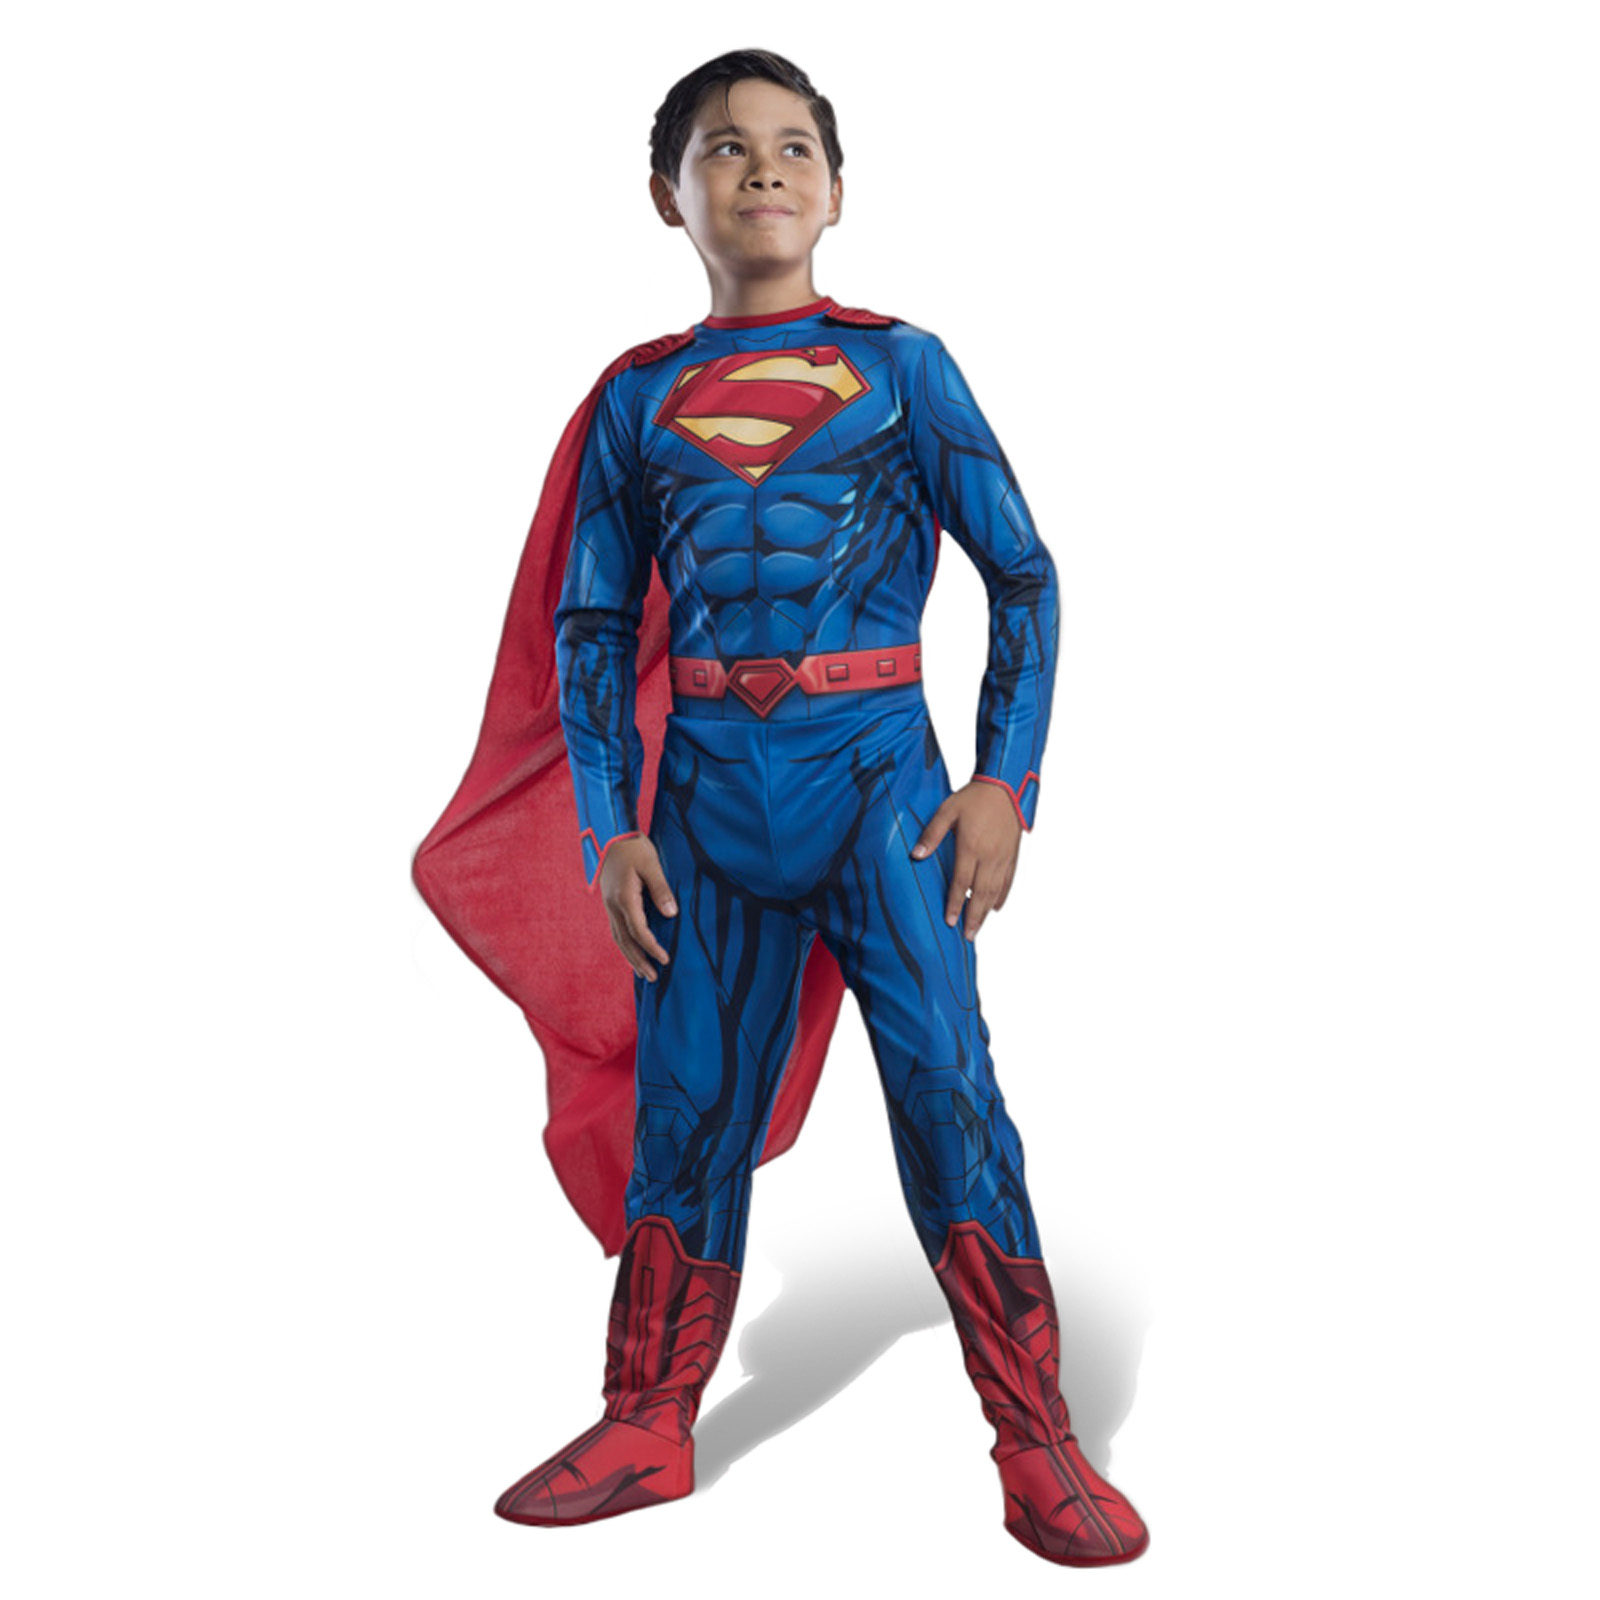 Superman - Costume Complet pour Enfants